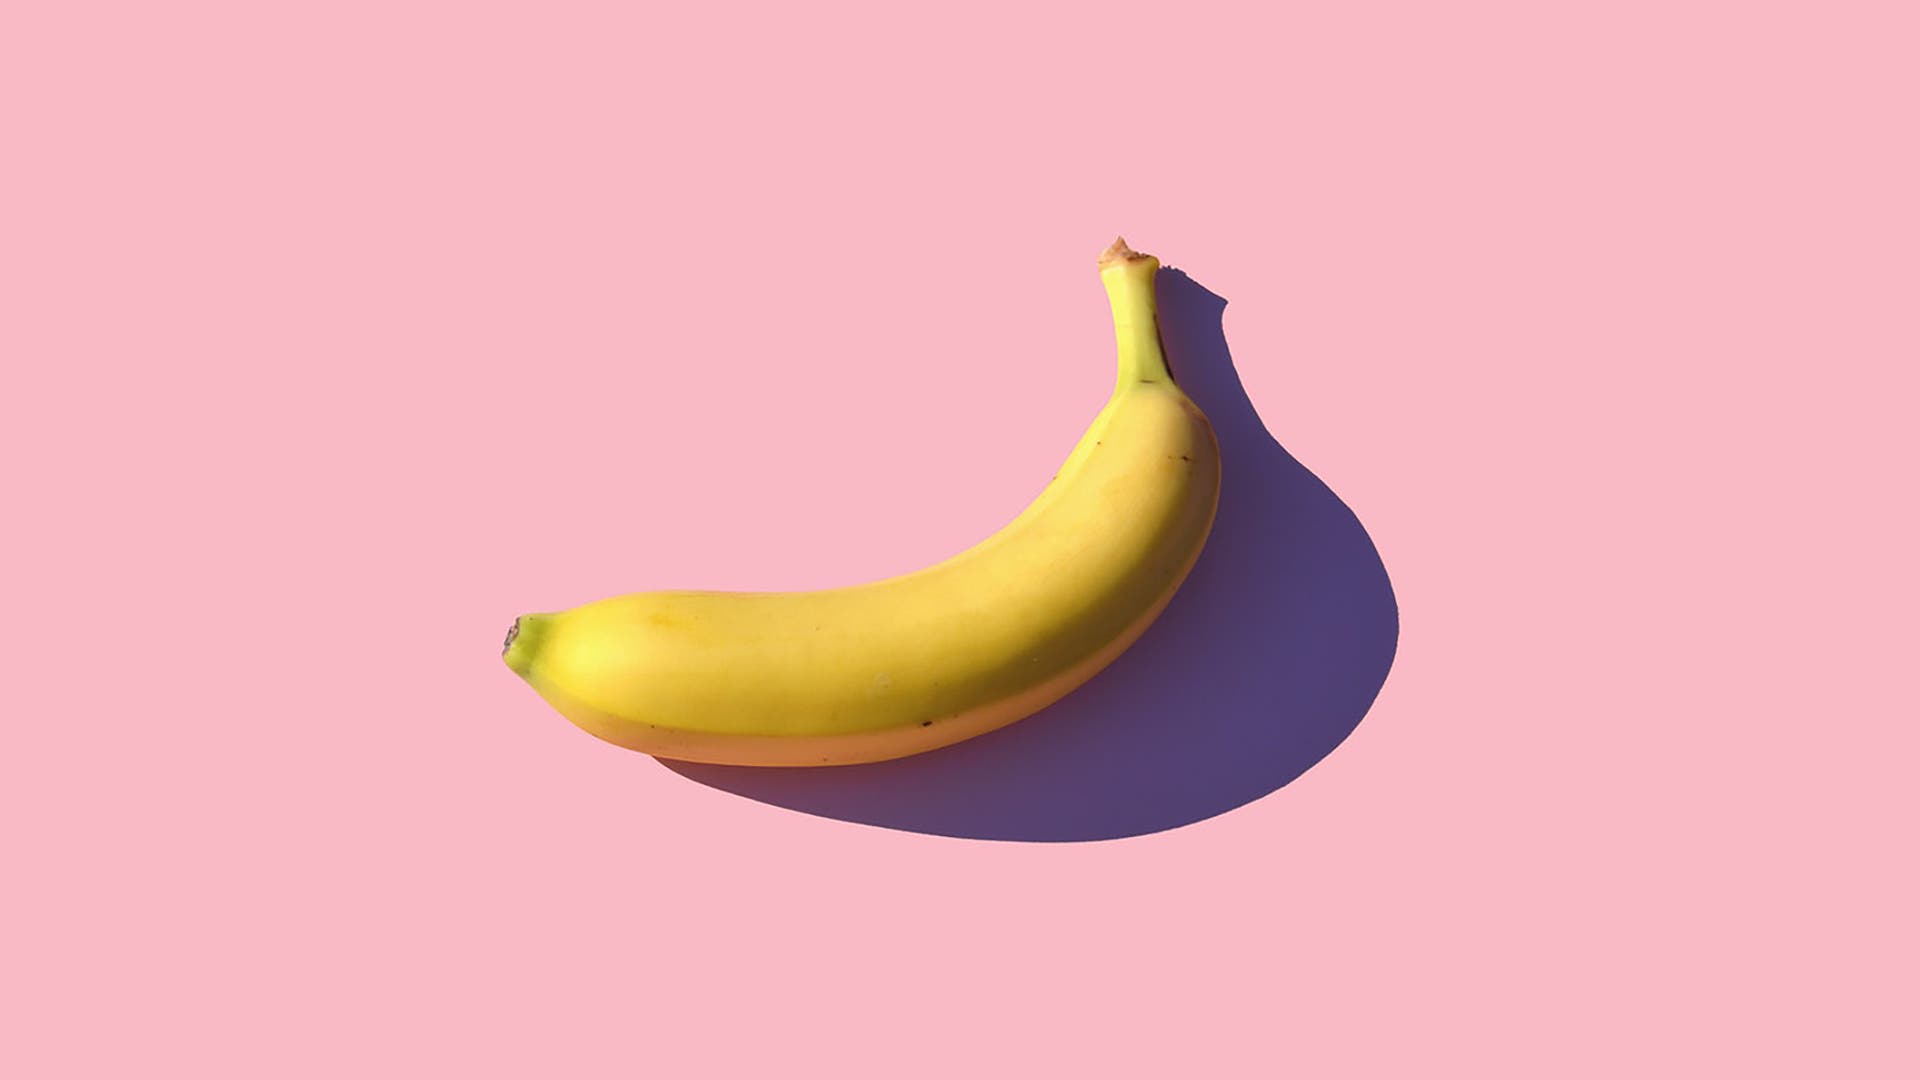 Buigen: van bananen naar de vorm van het universum waarin we leven